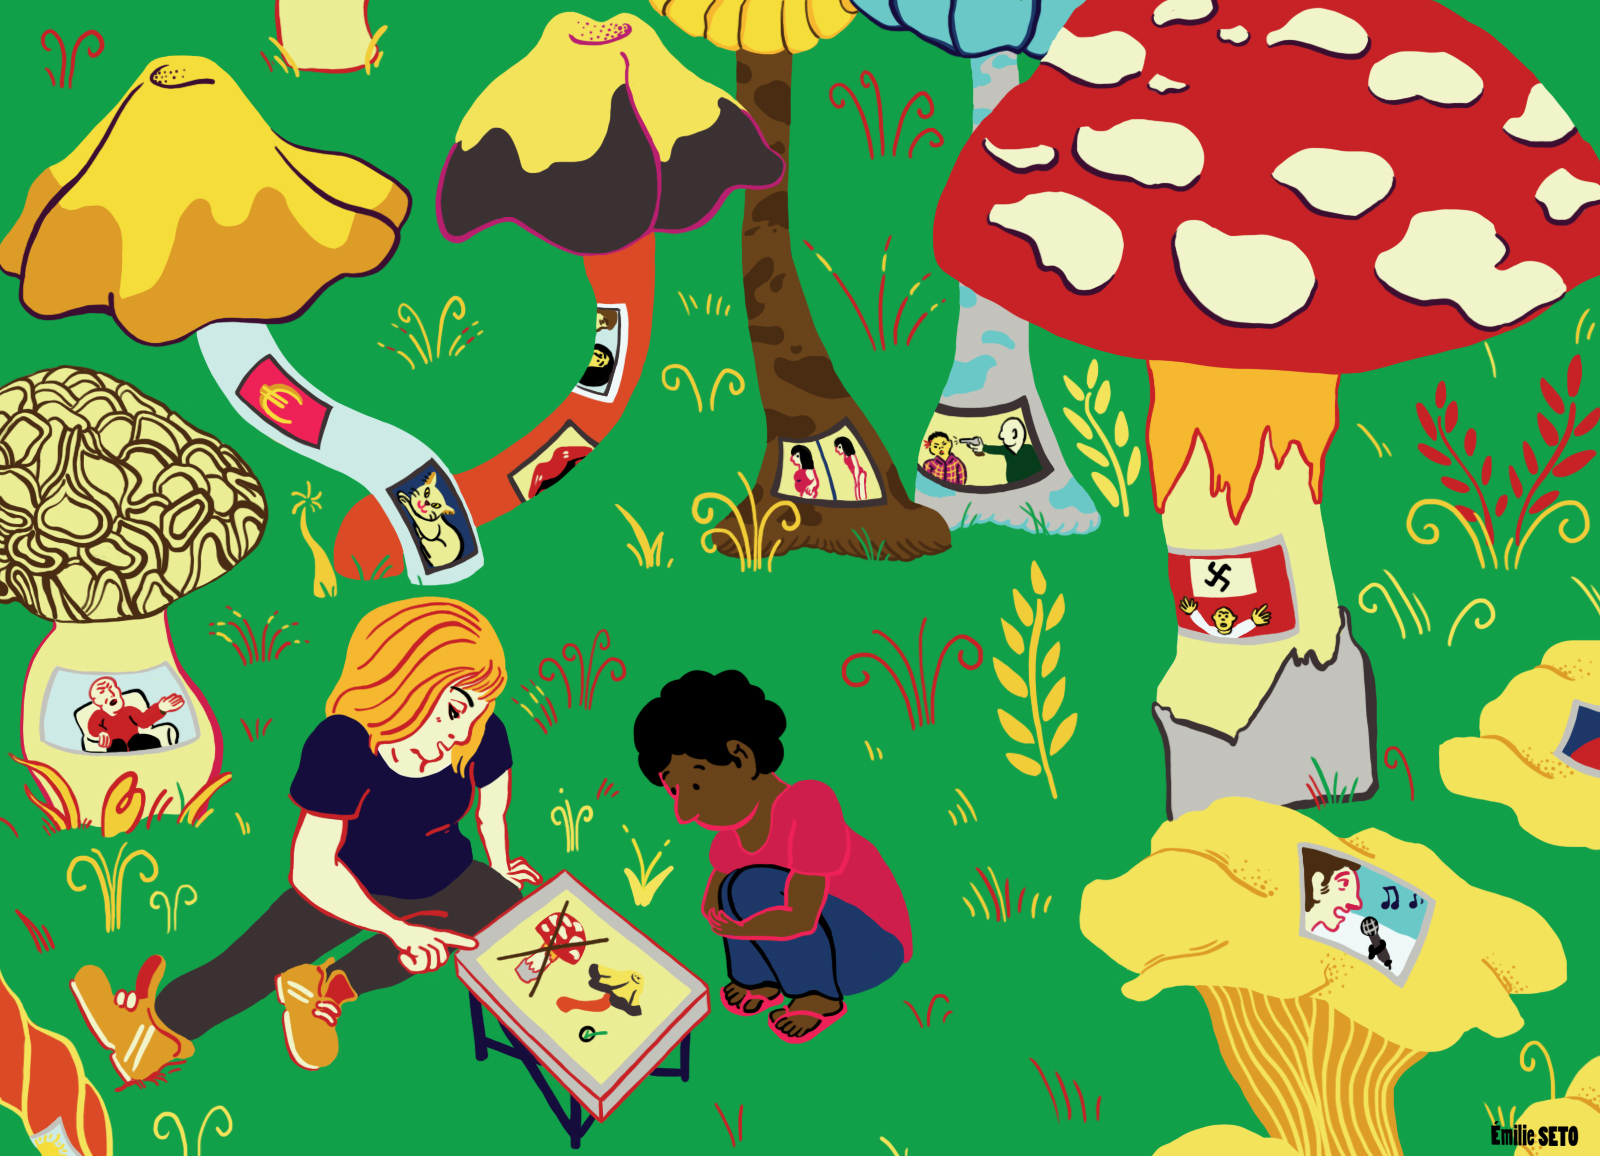 Illustration montrant des enfants regardant un ouvrage sur les champignons, métaphore des écrans